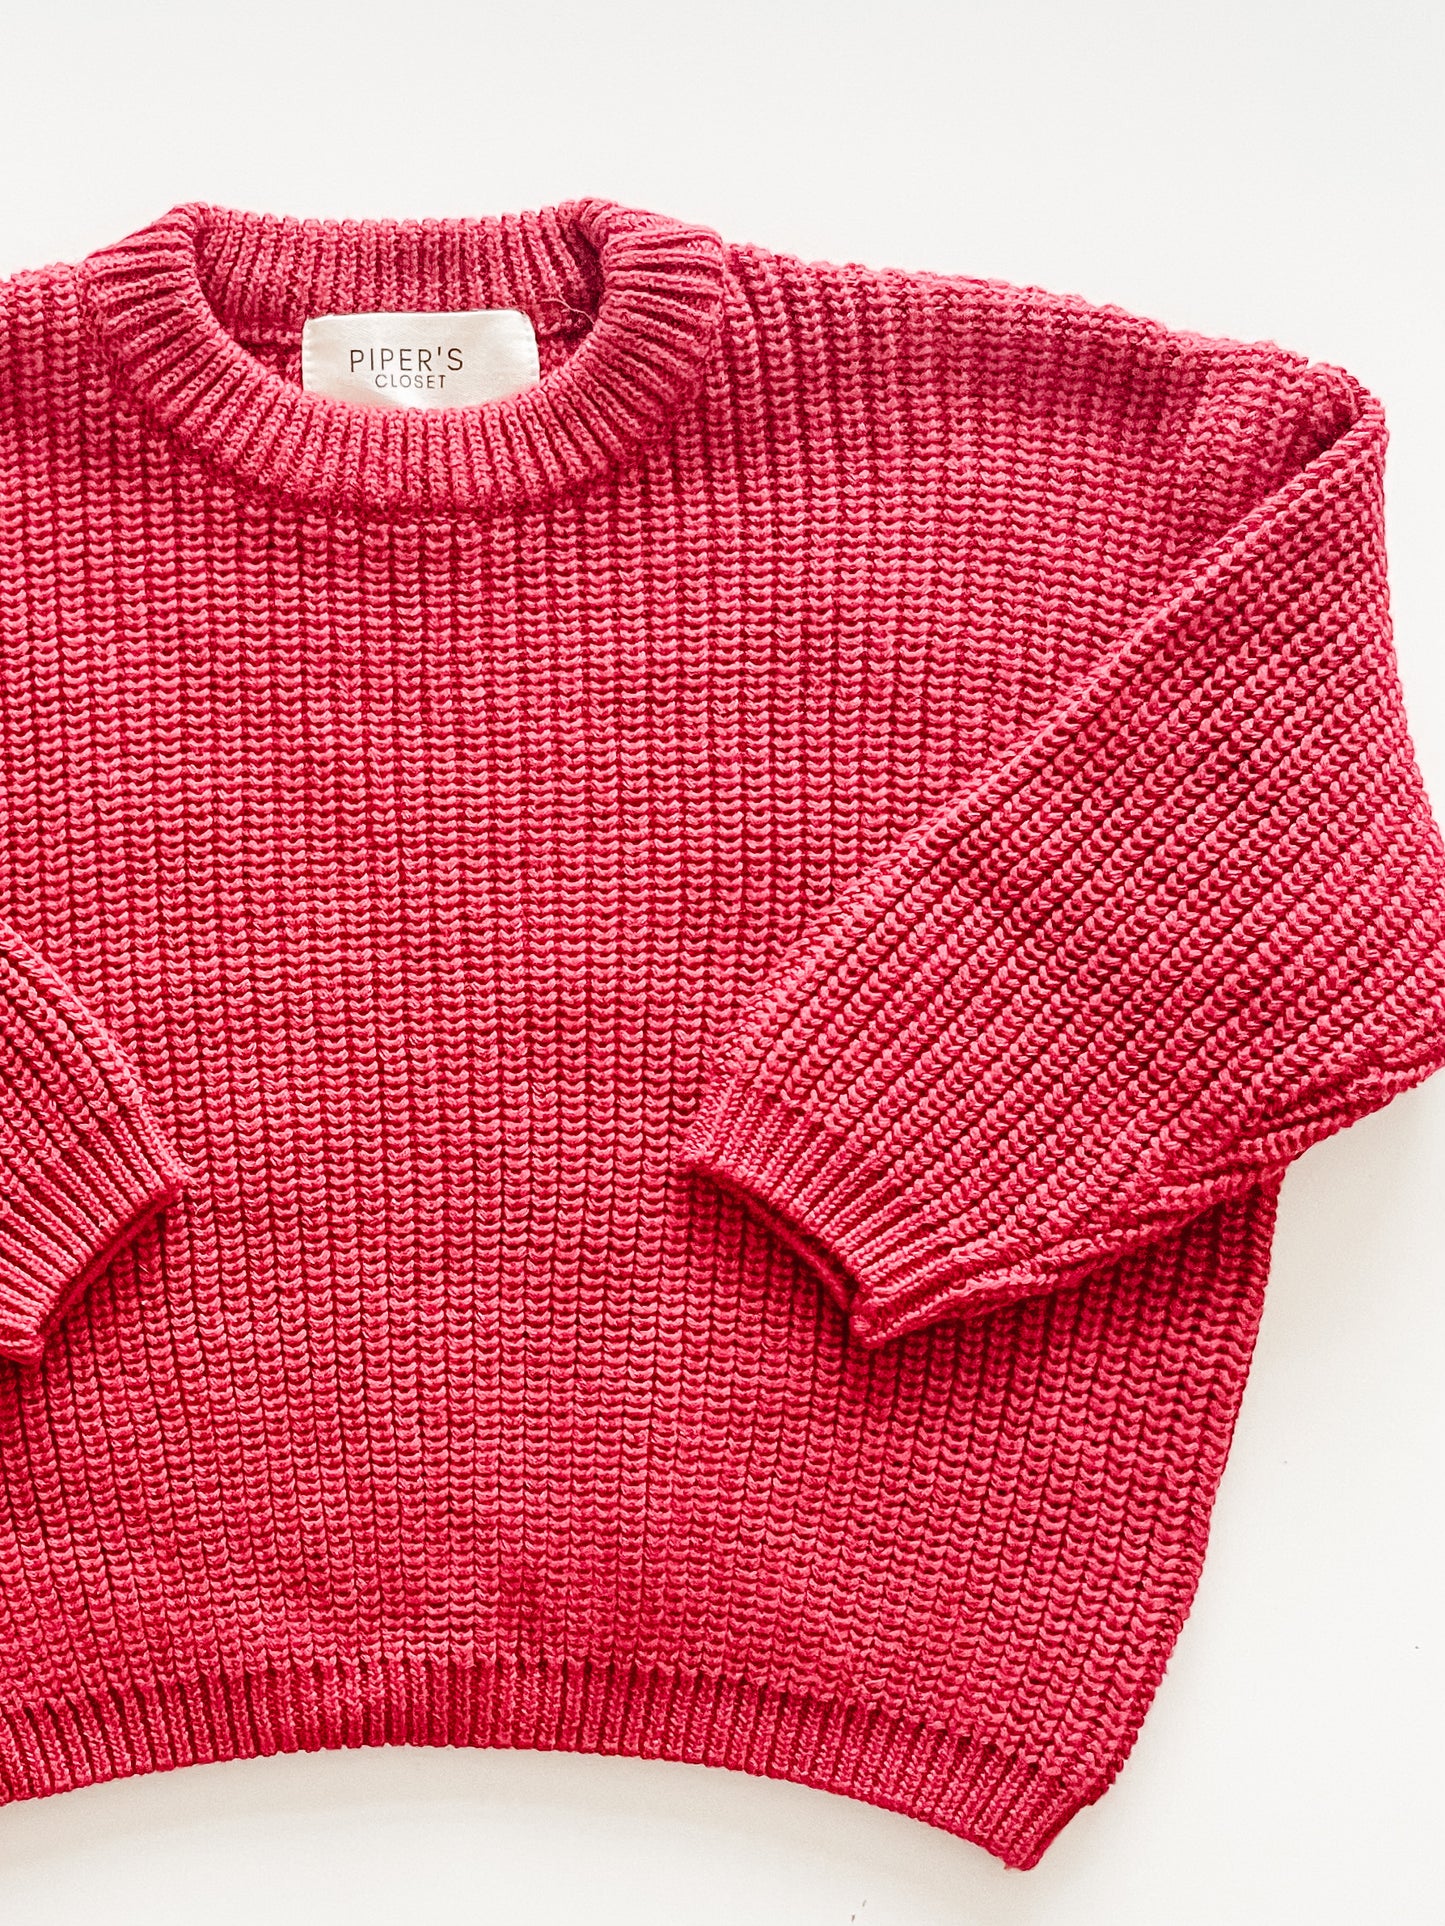 Knit Sweater in Merlot